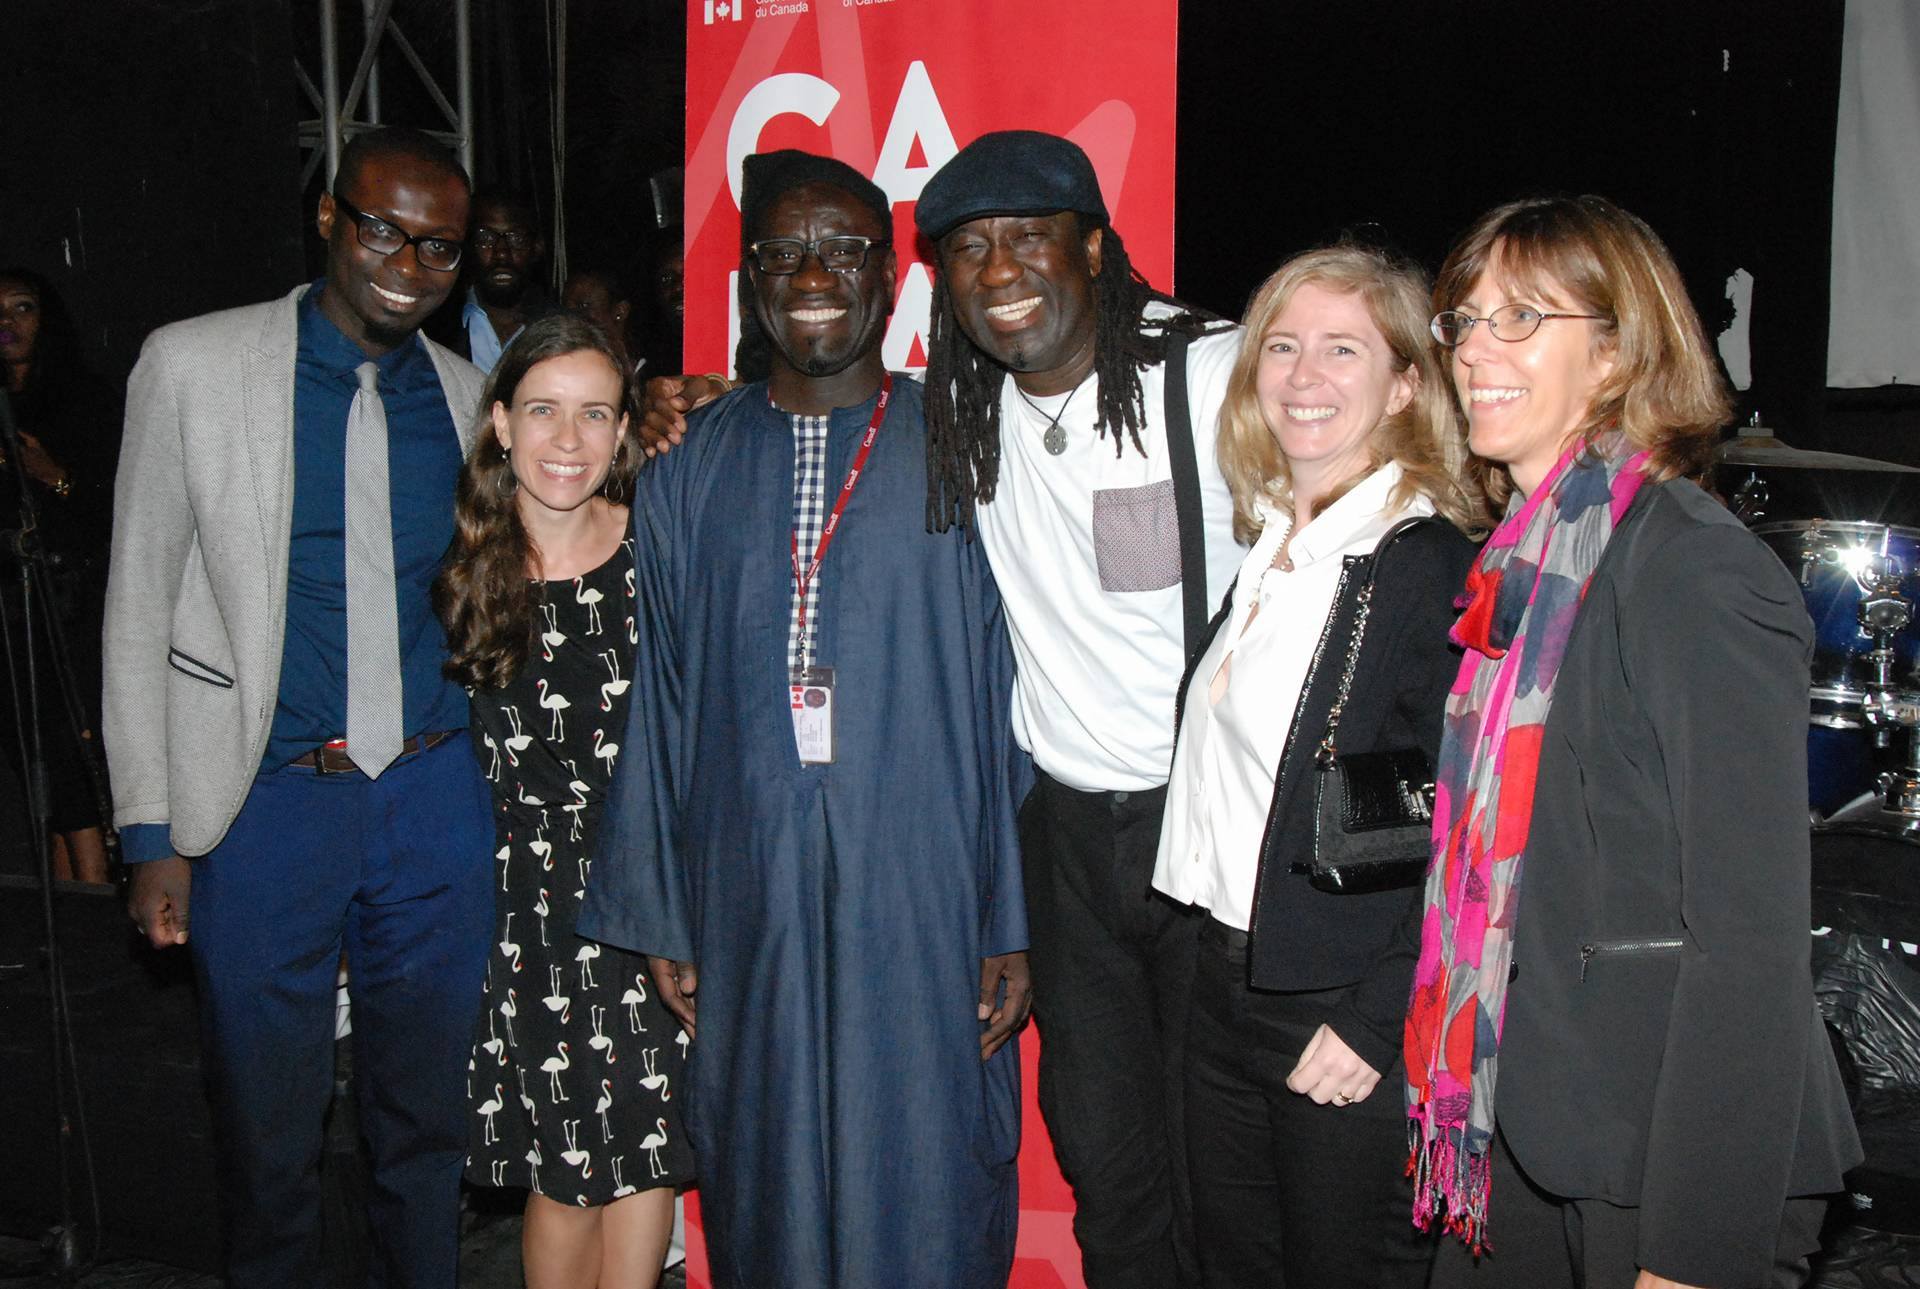 L'artiste international sénégalais Elage Diouf a réussi son pari en faisant guichet fermé à l'institut français de Dakar